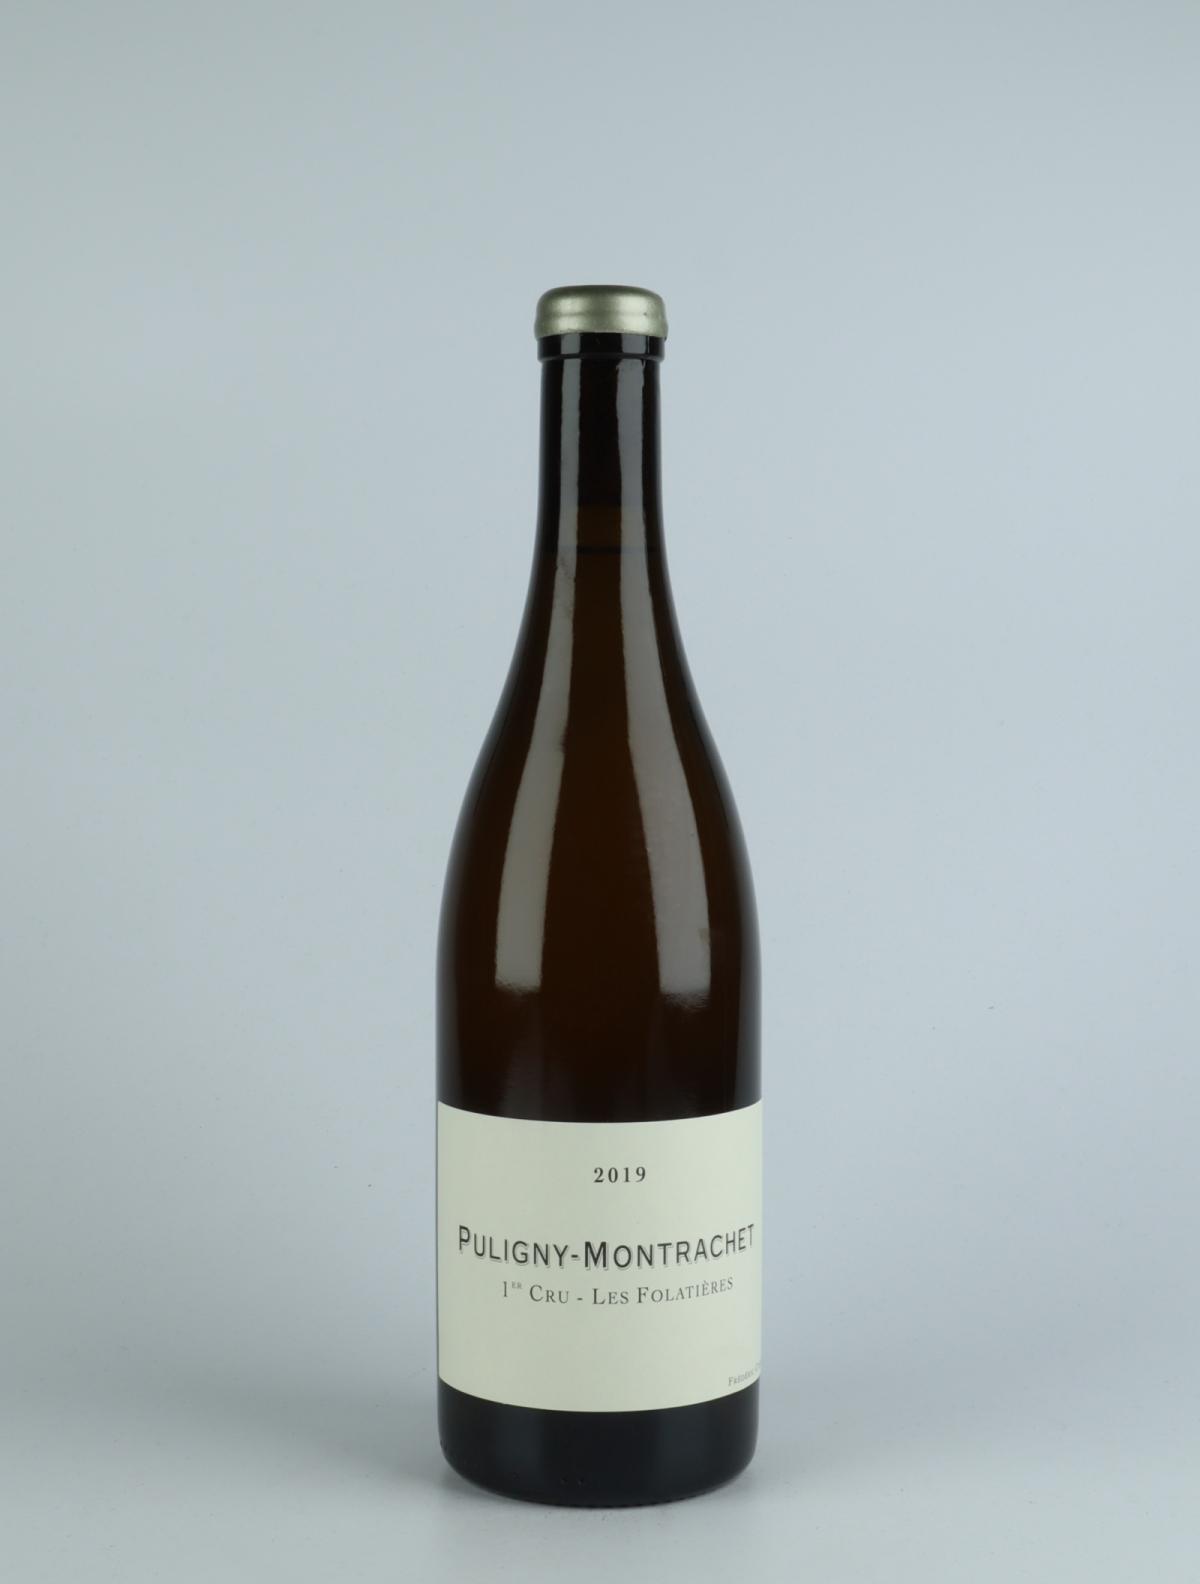 En flaske 2019 Puligny Montrachet 1. Cru - Folatières Hvidvin fra Frédéric Cossard, Bourgogne i Frankrig